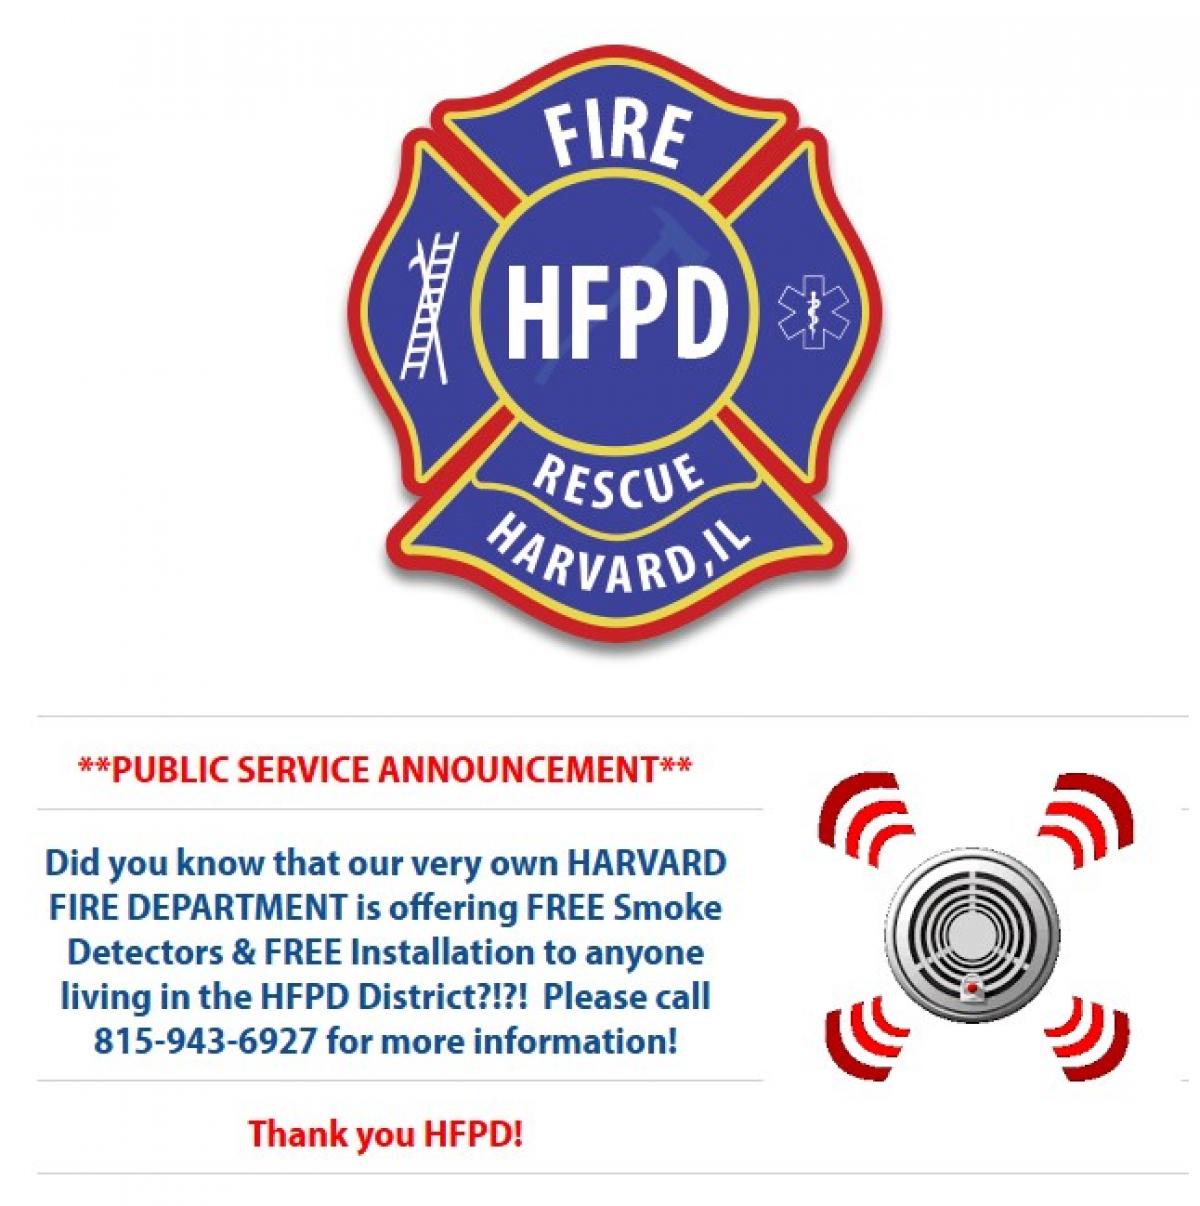 HFPD Public Service Announcement